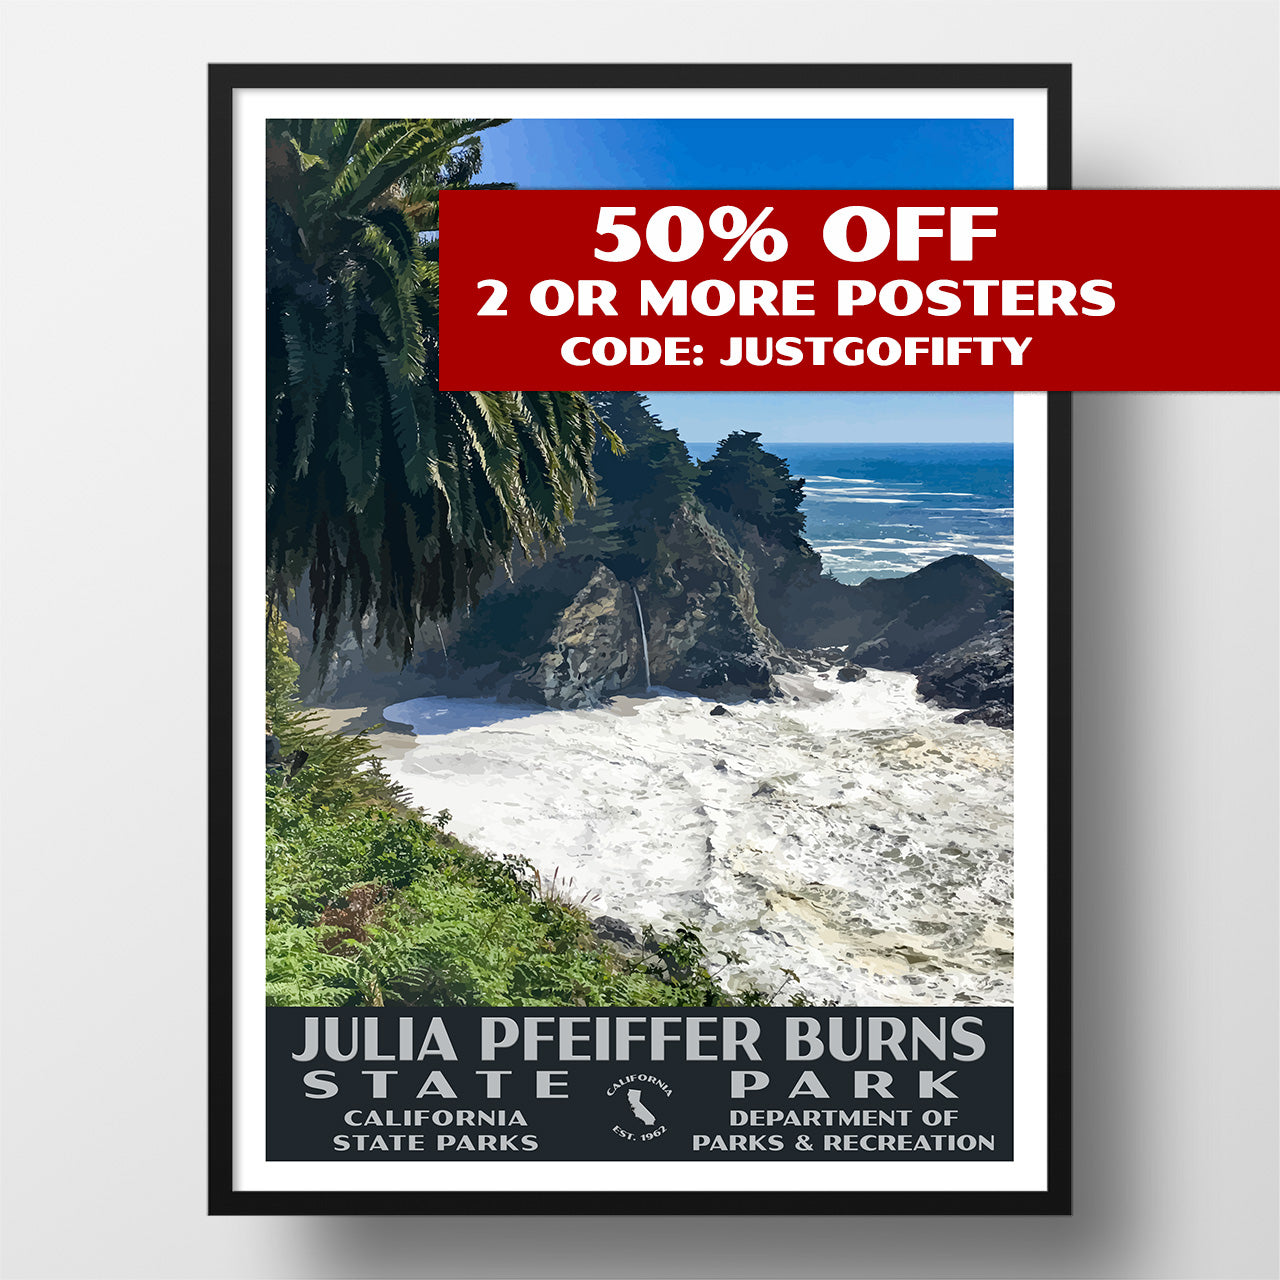 Julia Pfeiffer Burns State Park poster